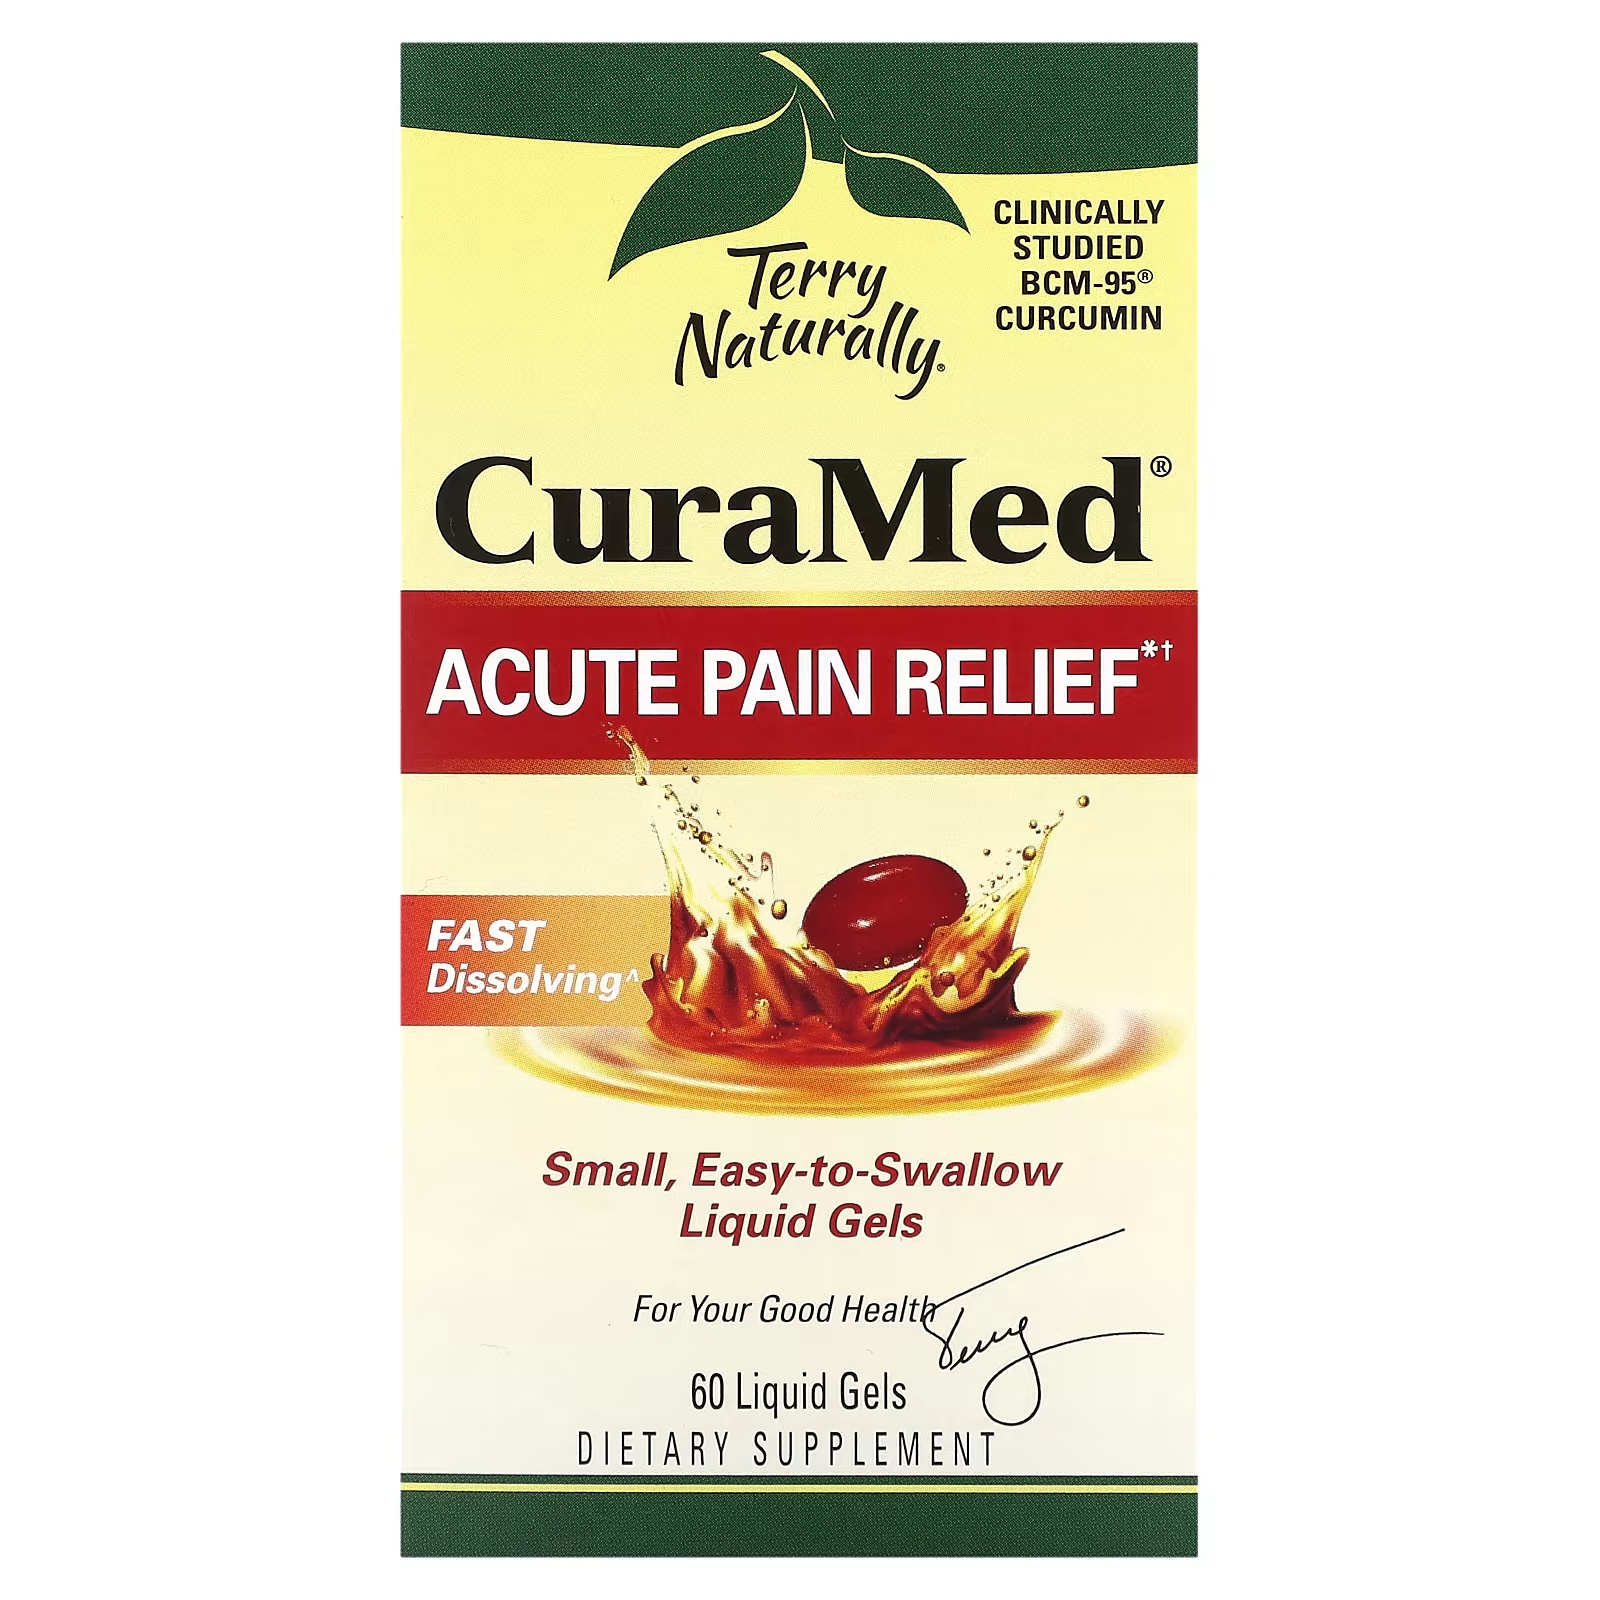 Обезболивающее средство Terry Naturally CuraMed от острой боли, 60 жидких гелей средство от острой боли terry naturally curamed 120 жидких гелей